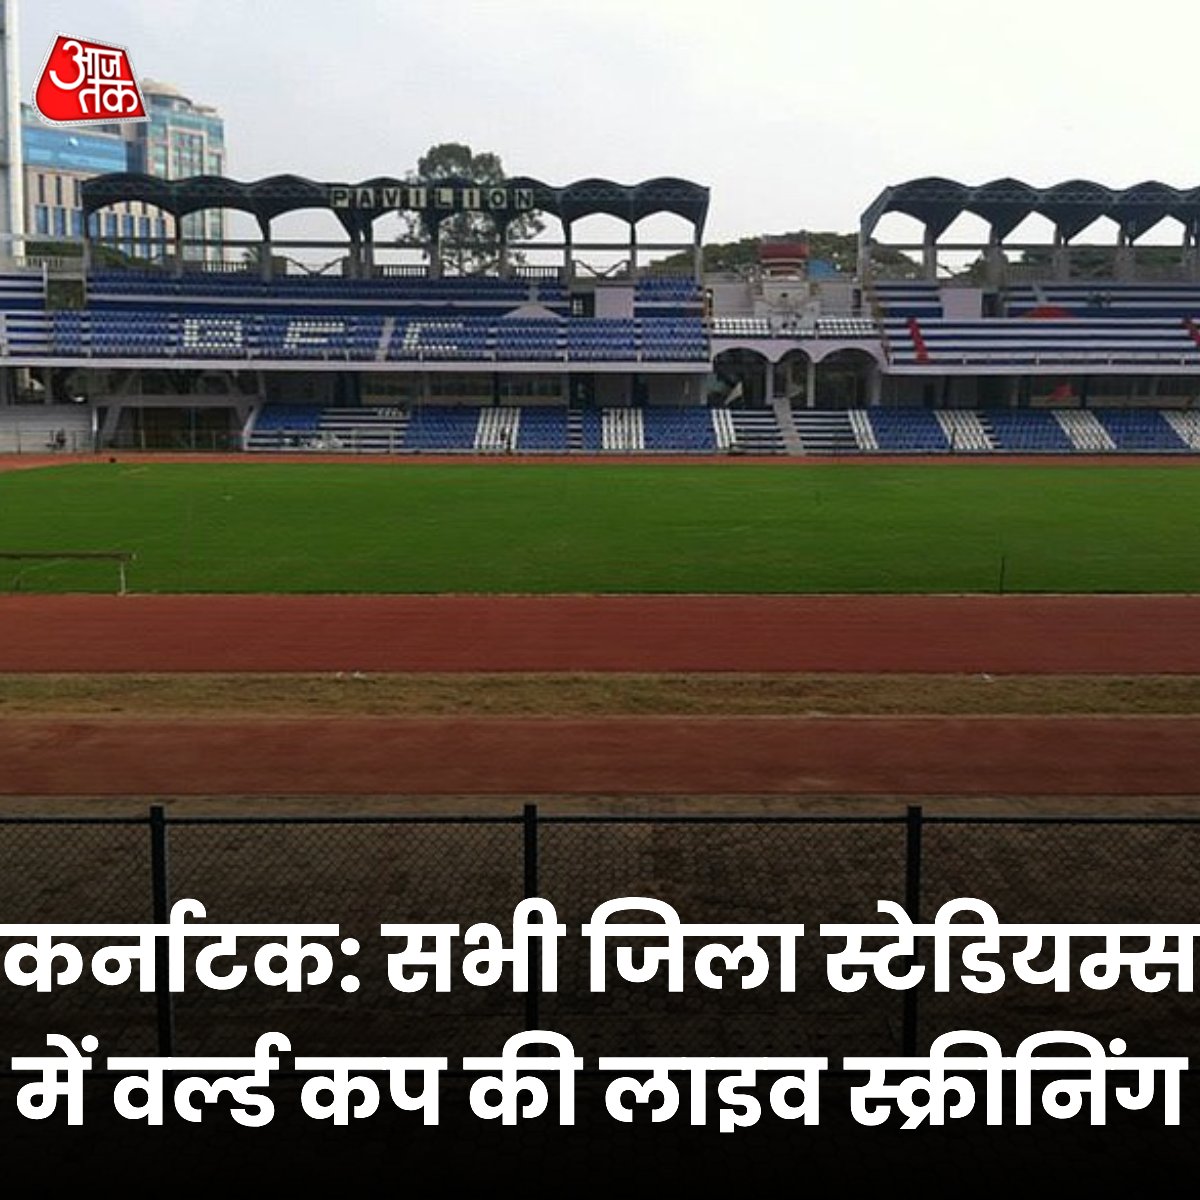 कर्नाटक के सभी जिला स्टेडियम्स में वर्ल्ड कप की लाइव स्क्रीनिंग होगी

#WorldCup #WorldCup2023 #cricketworldcup23